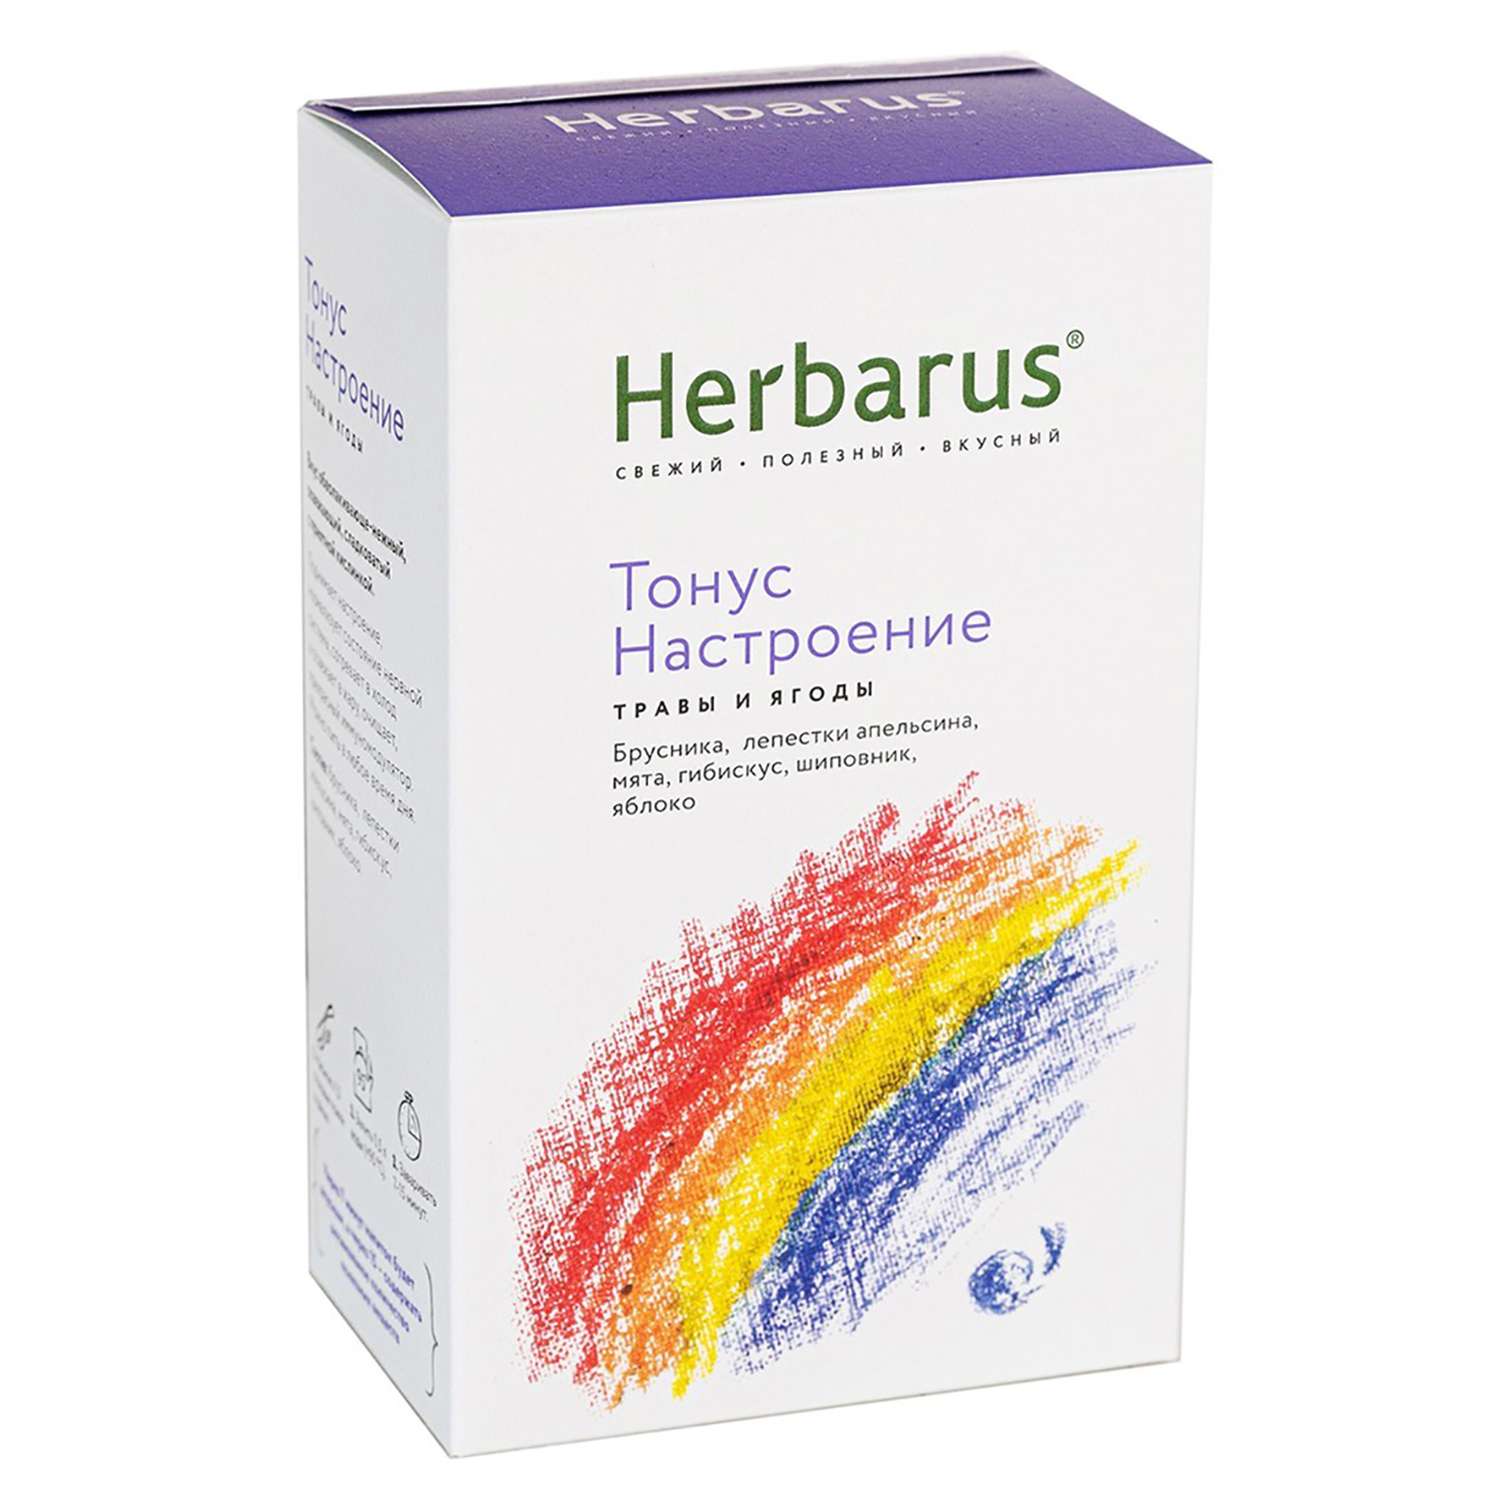 Напиток чайный Herbarus Тонус настроение травяной 50г - фото 1